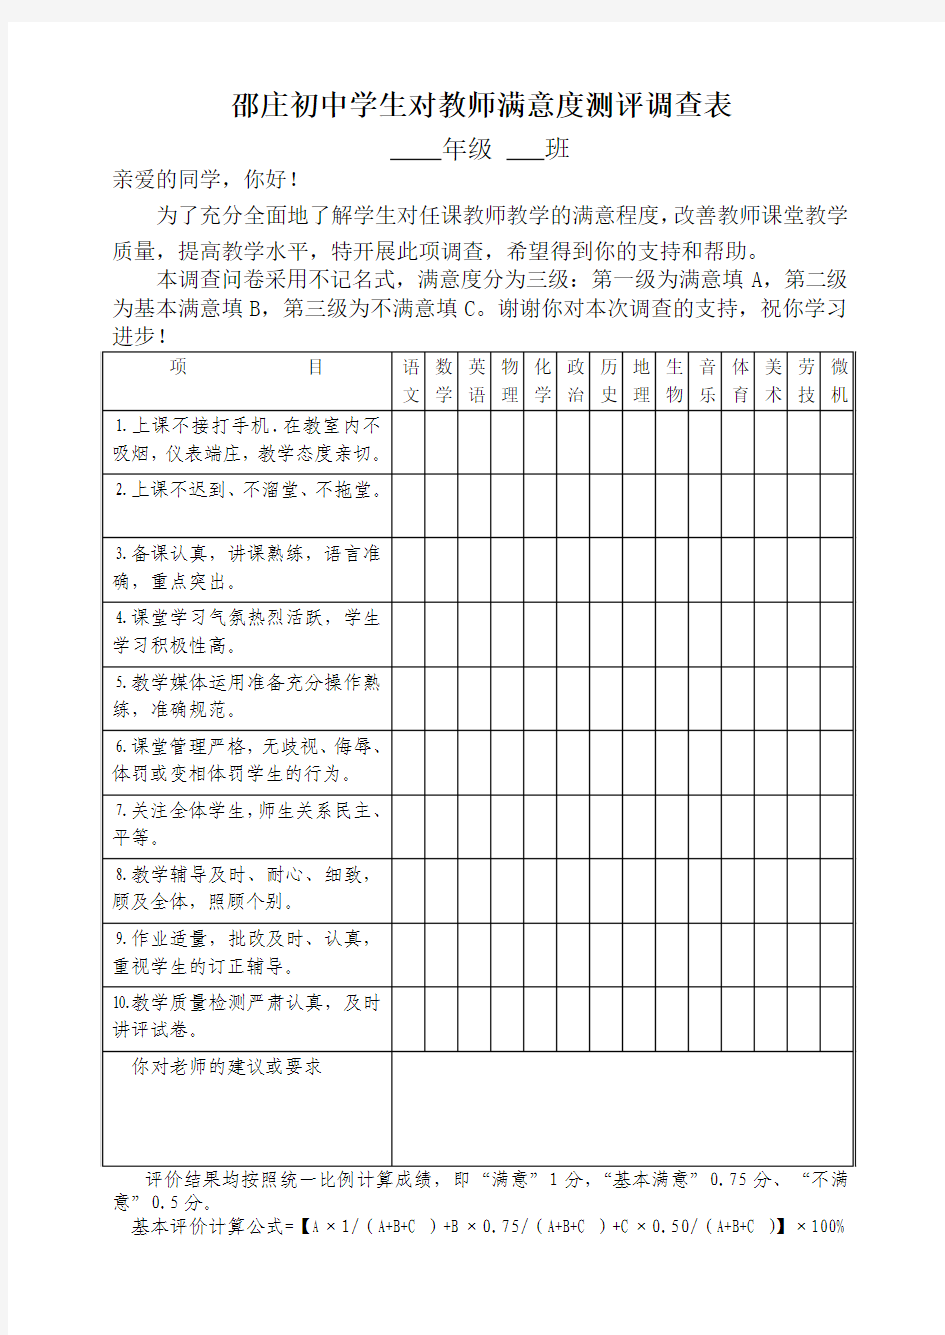 邵庄初中学生评议教师测评表